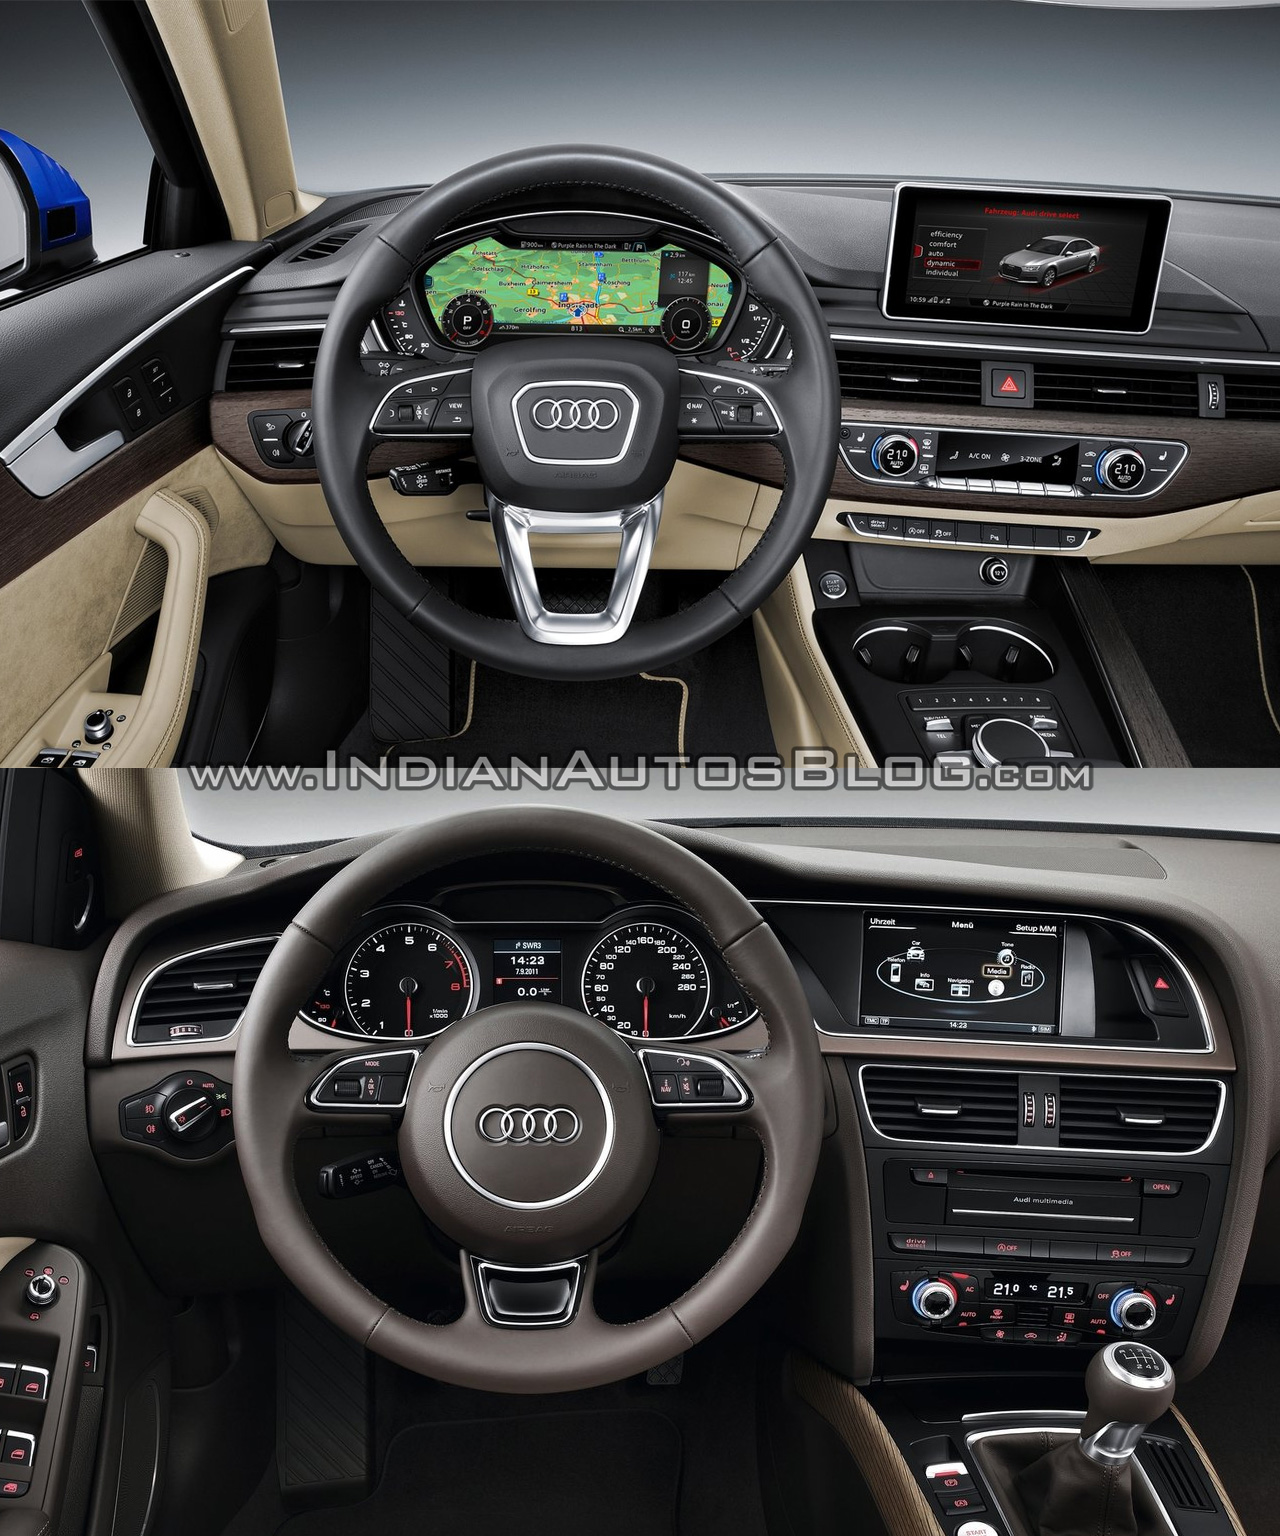 2016 Audi A4 B9 Vs 2013 Audi A4 B8 Old Vs New